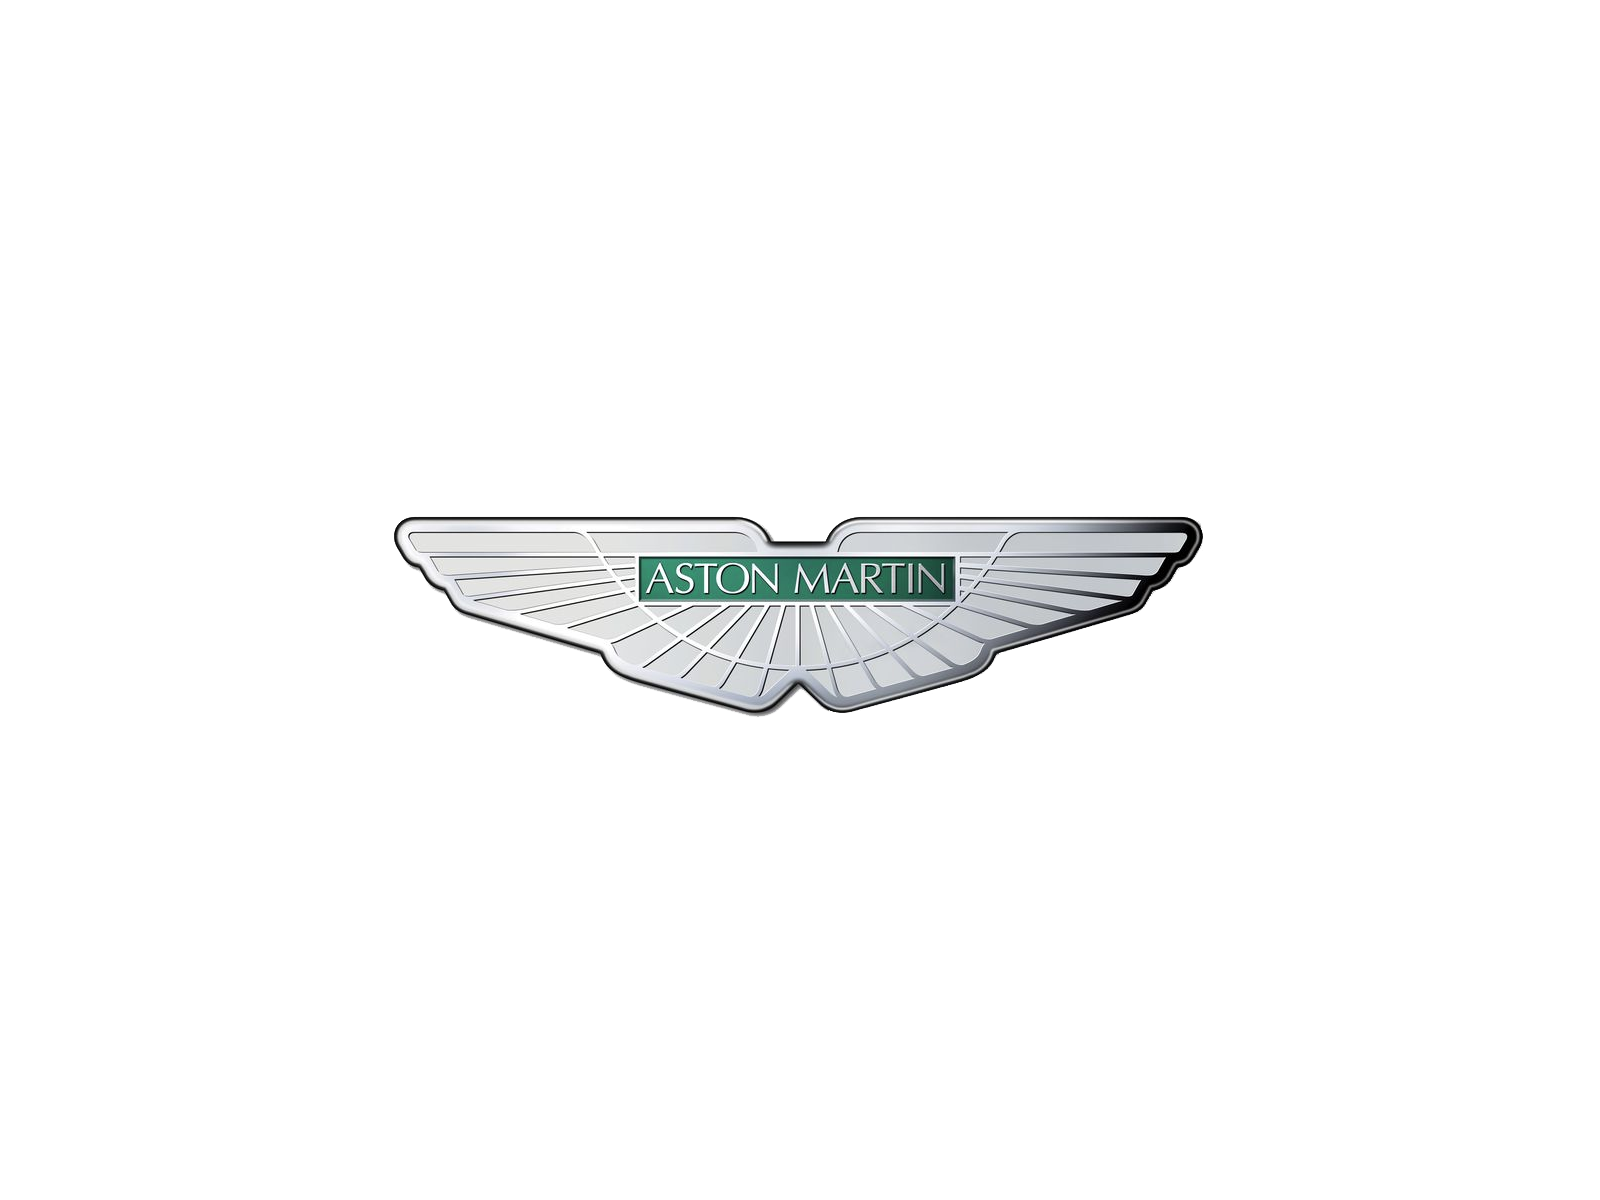 Logotipo da Aston Martin